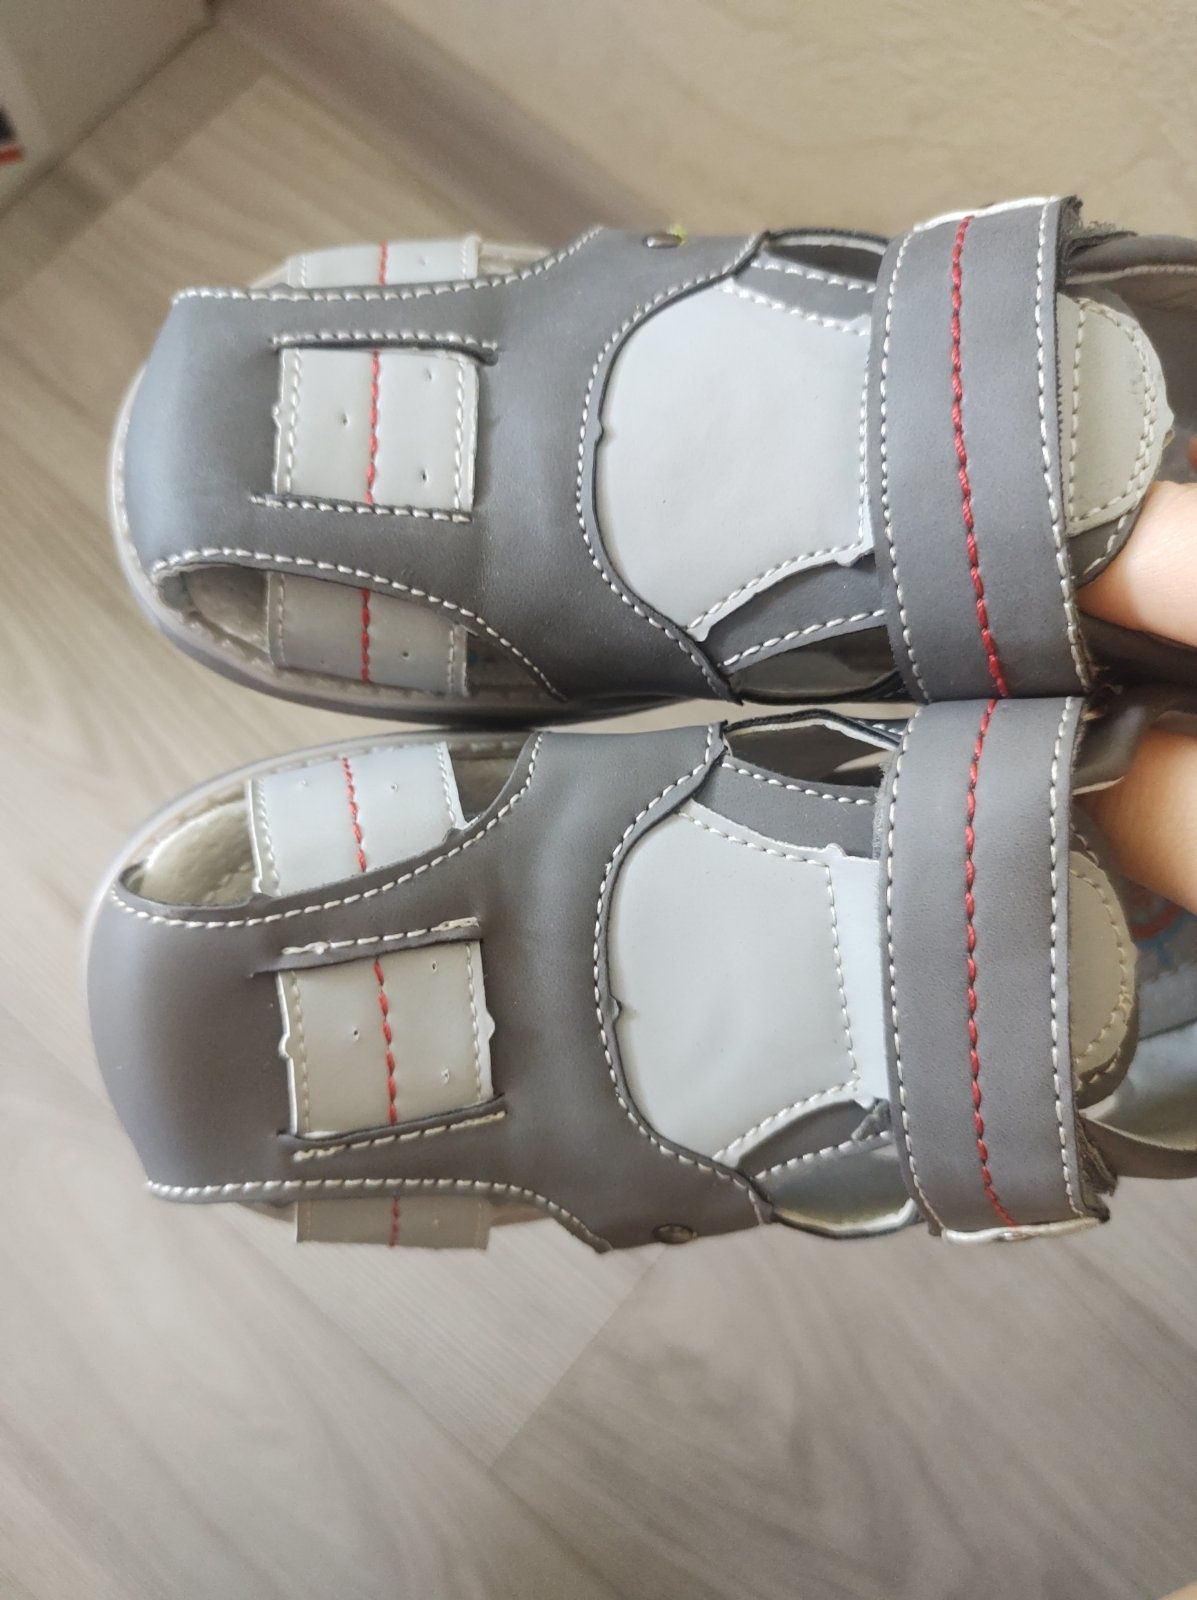 Детские босоножки, сандалии 30 размер (новые)